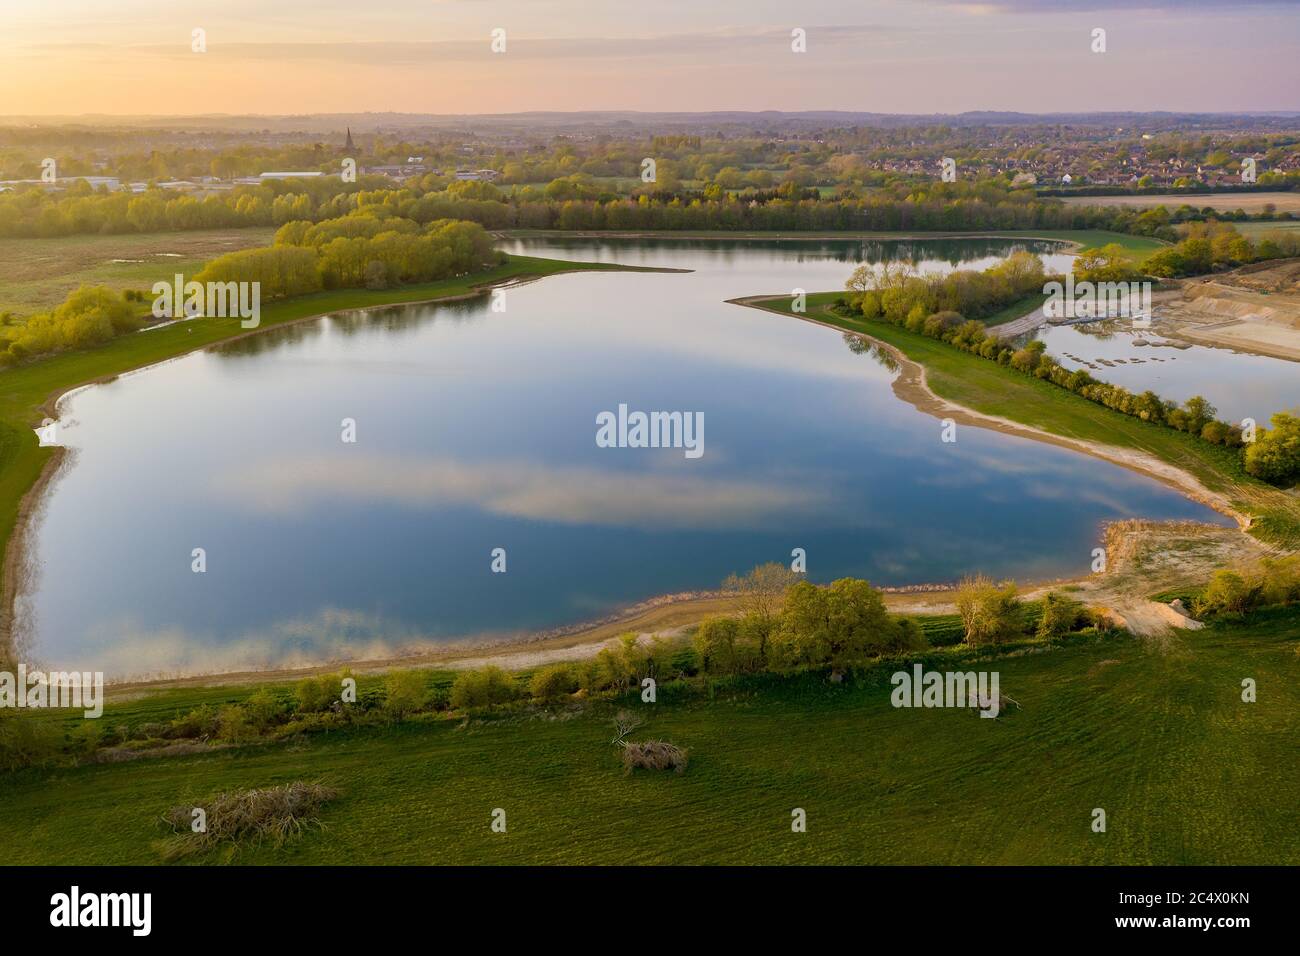 Ein von Menschen gemachter See, das Endergebnis einer großräumigen Kiesförderung in der Nähe von Witney in West Oxfordshire, Großbritannien Stockfoto